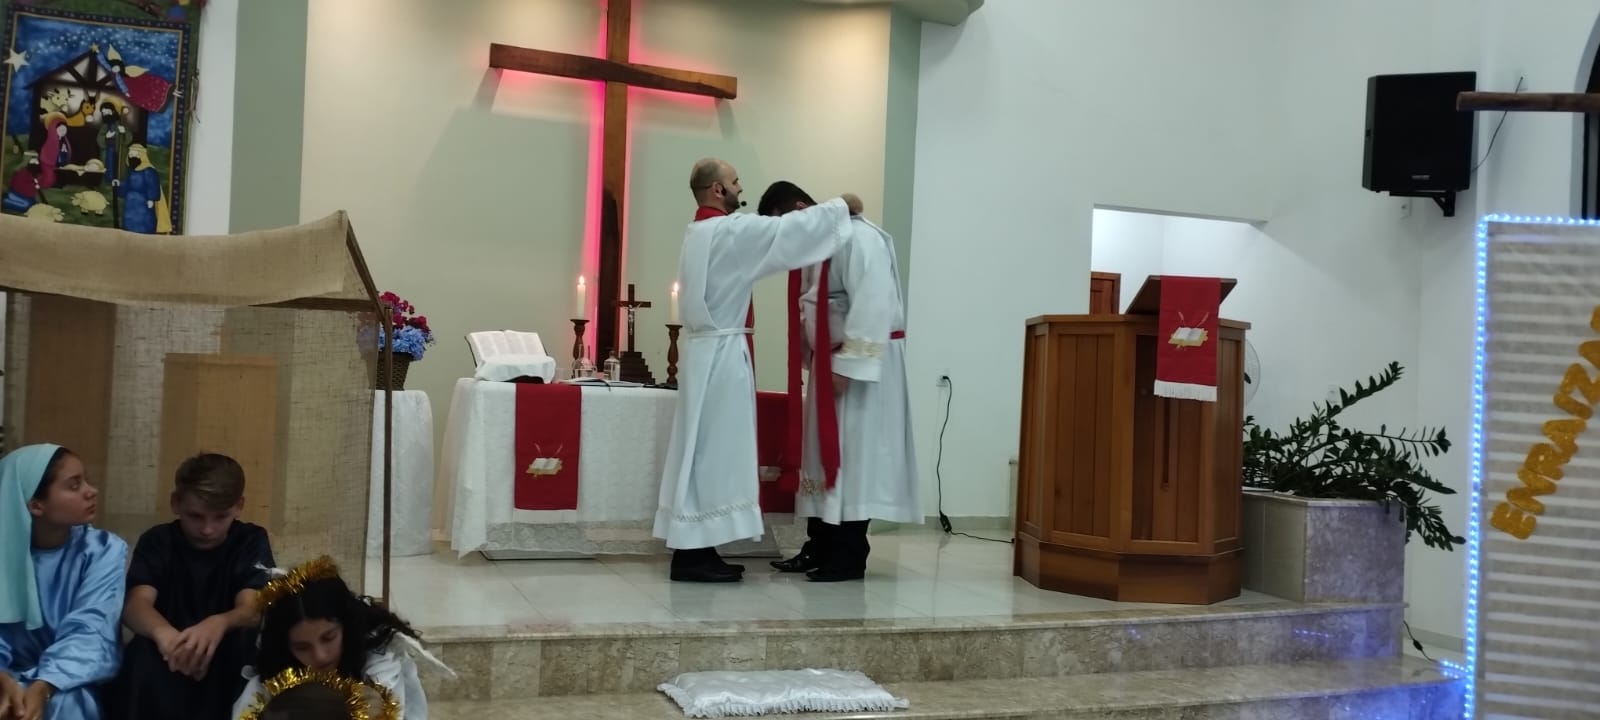 Ordenação do pastor Tiago João Borges em Joinville, SC